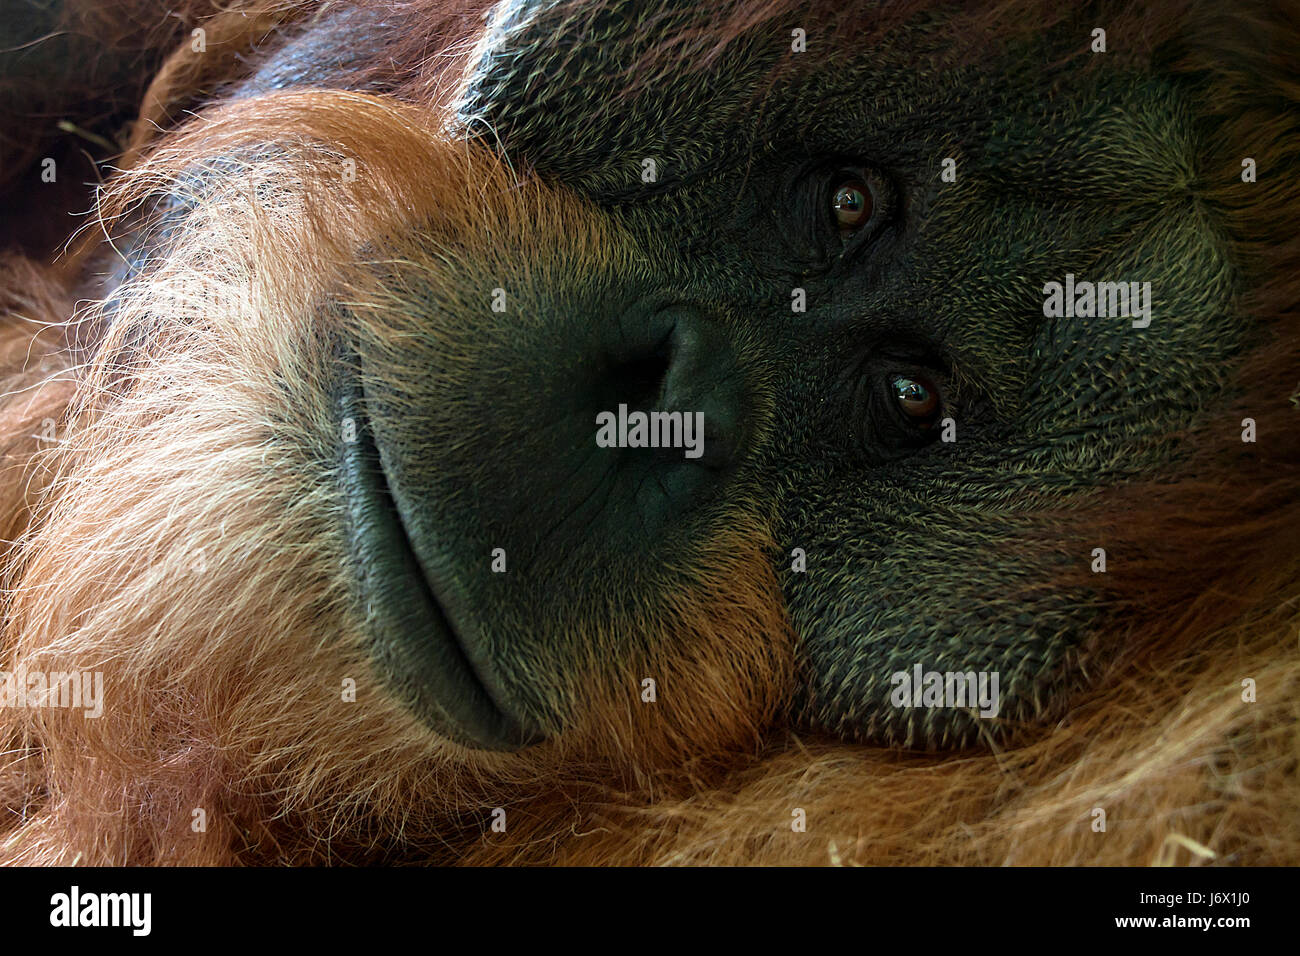 Orangutan Foto Stock